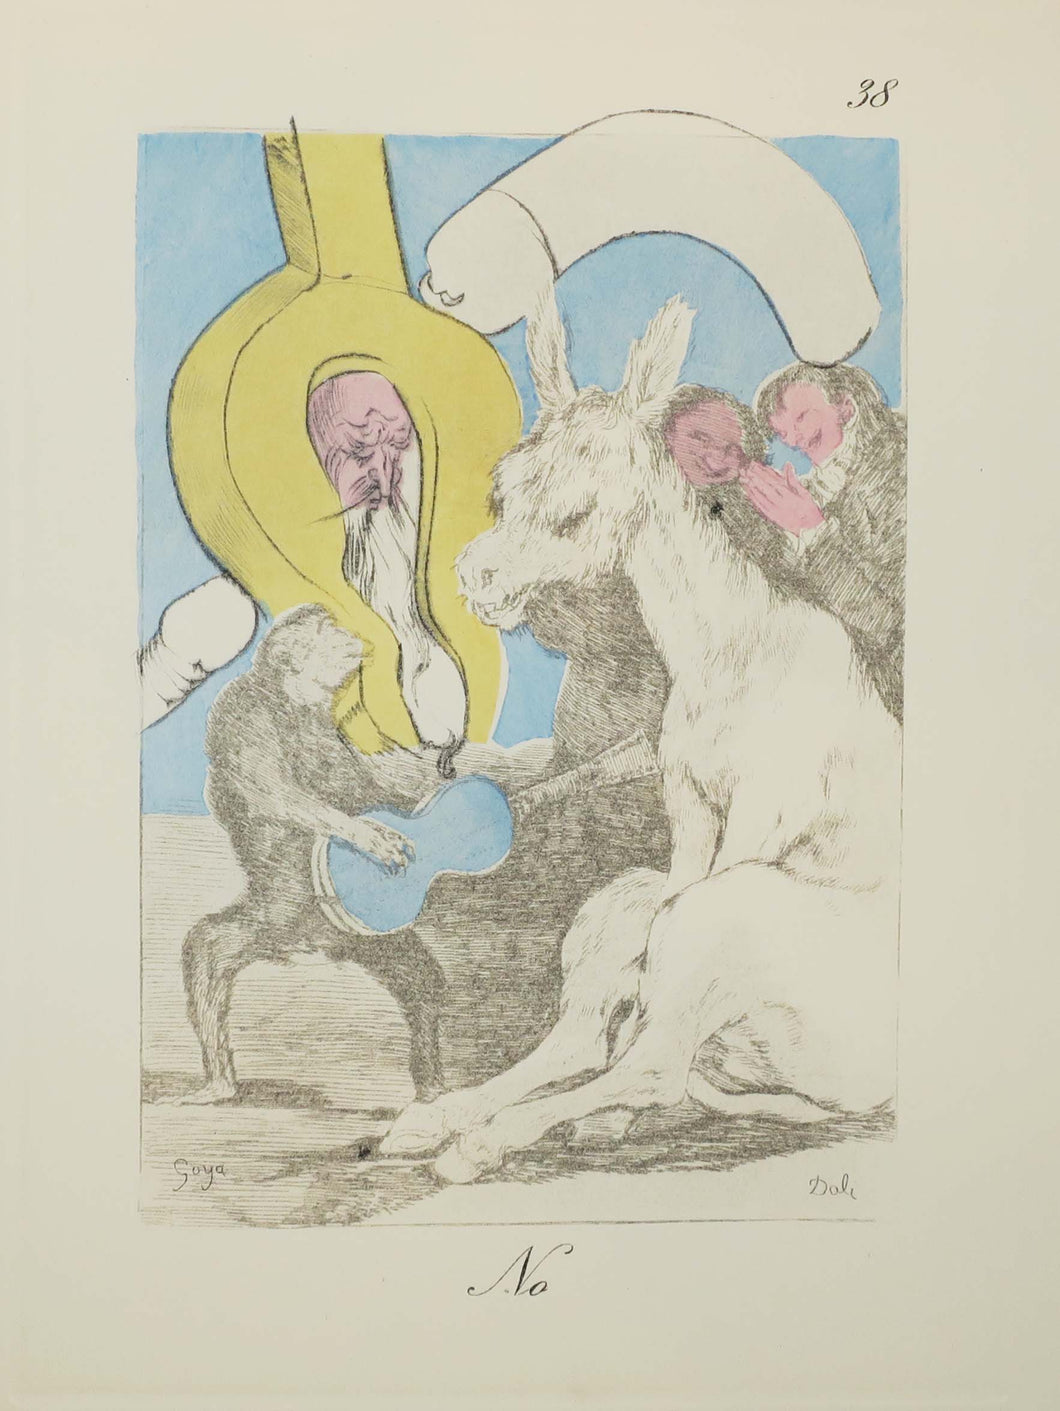 No. Les Caprices de Goya de Dali. 1977.